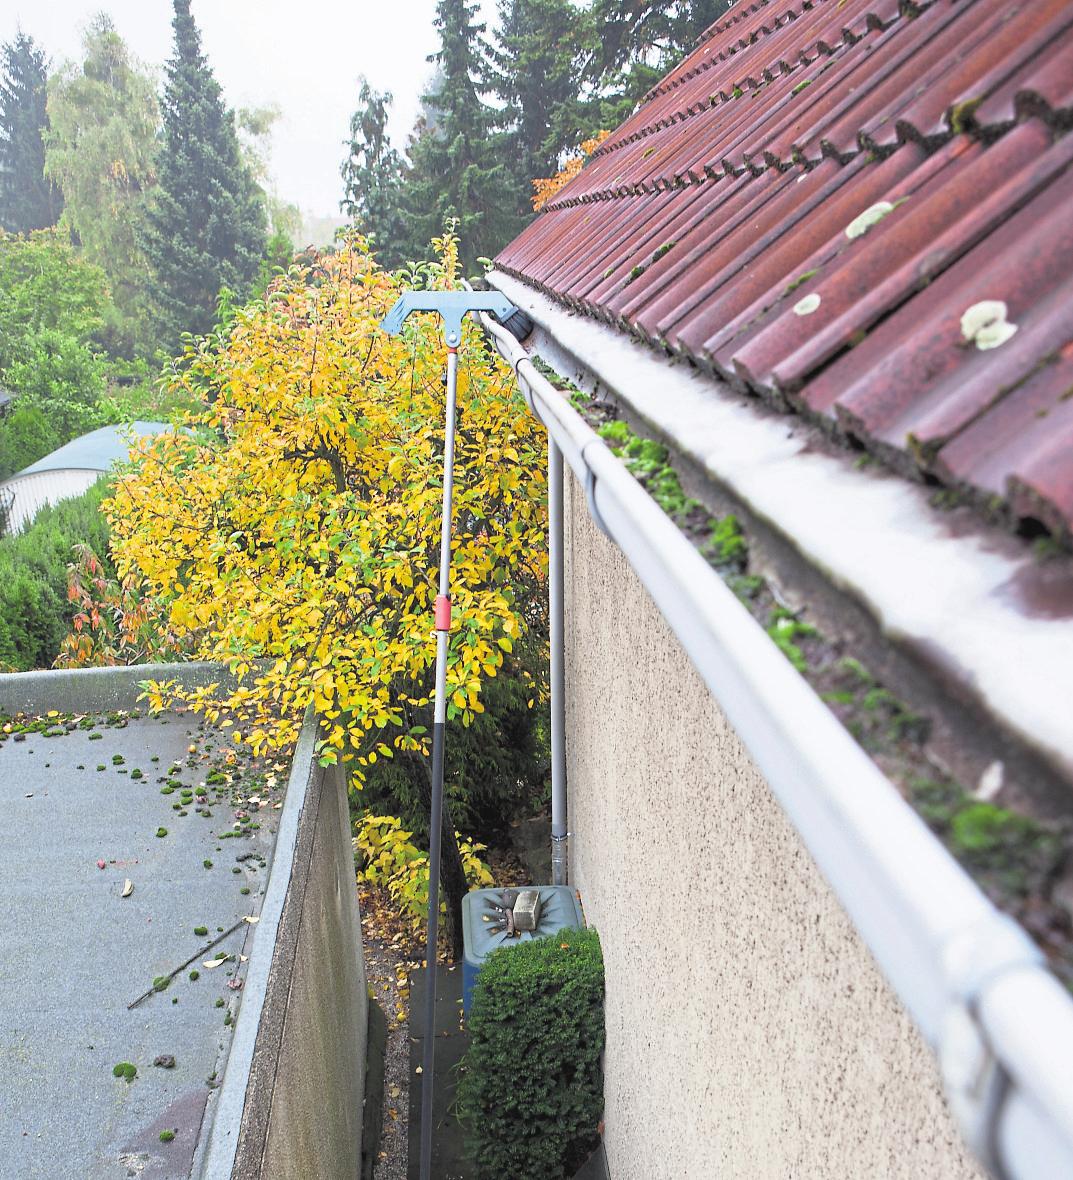 Dachrinnen müssen frei von Laub und anderen Fremdkörpern sein, damit im Winter Regen- und Schmelzwasser gut ablaufen kann. Foto: Silvia Marks/mag